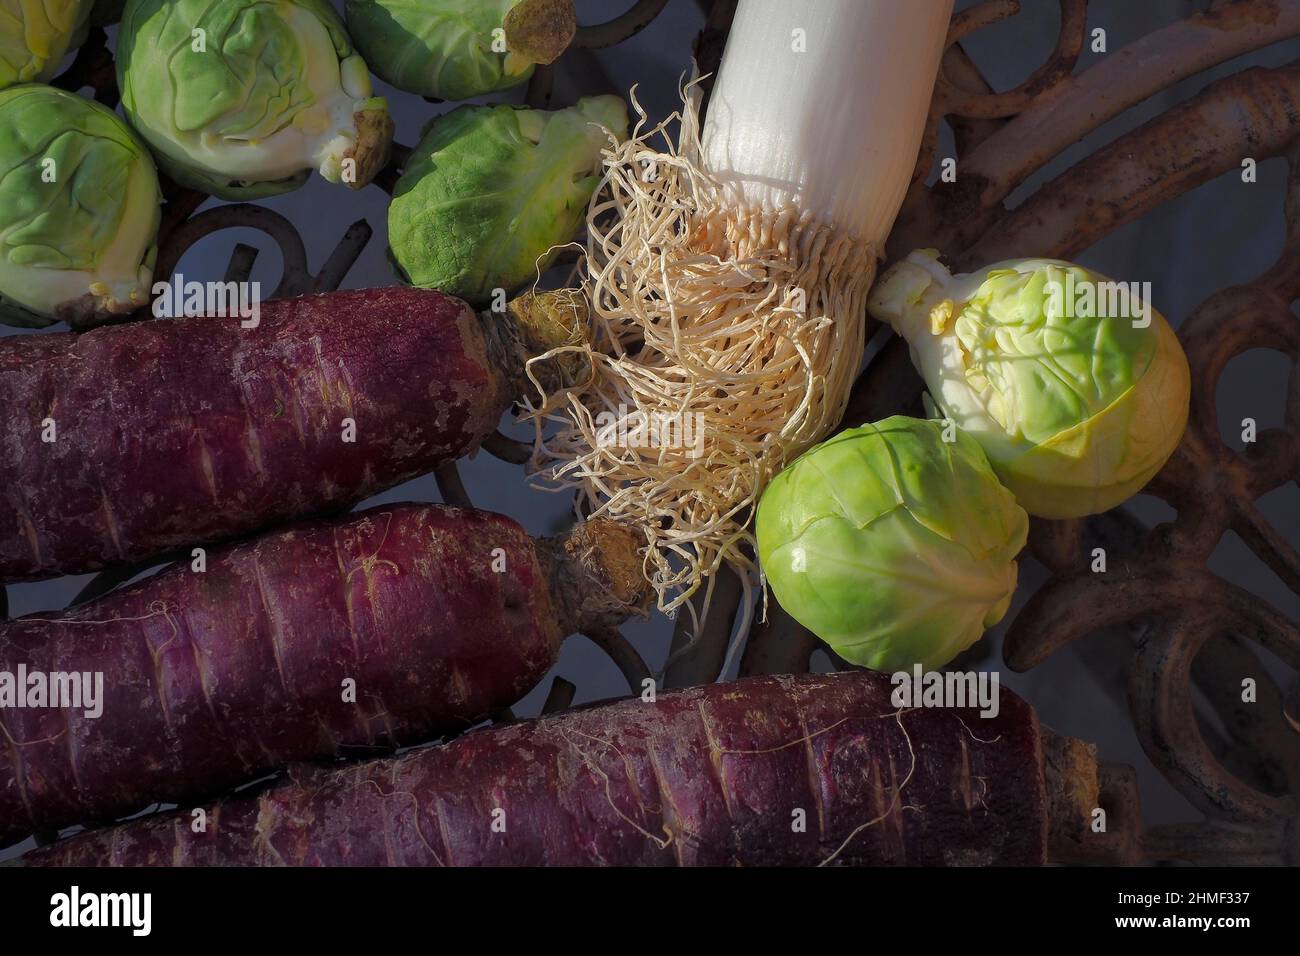 Rosenkohl, Lauch und alte Karotten mit weinroter Färbung, Gemüse von oben, Draufsicht Stockfoto